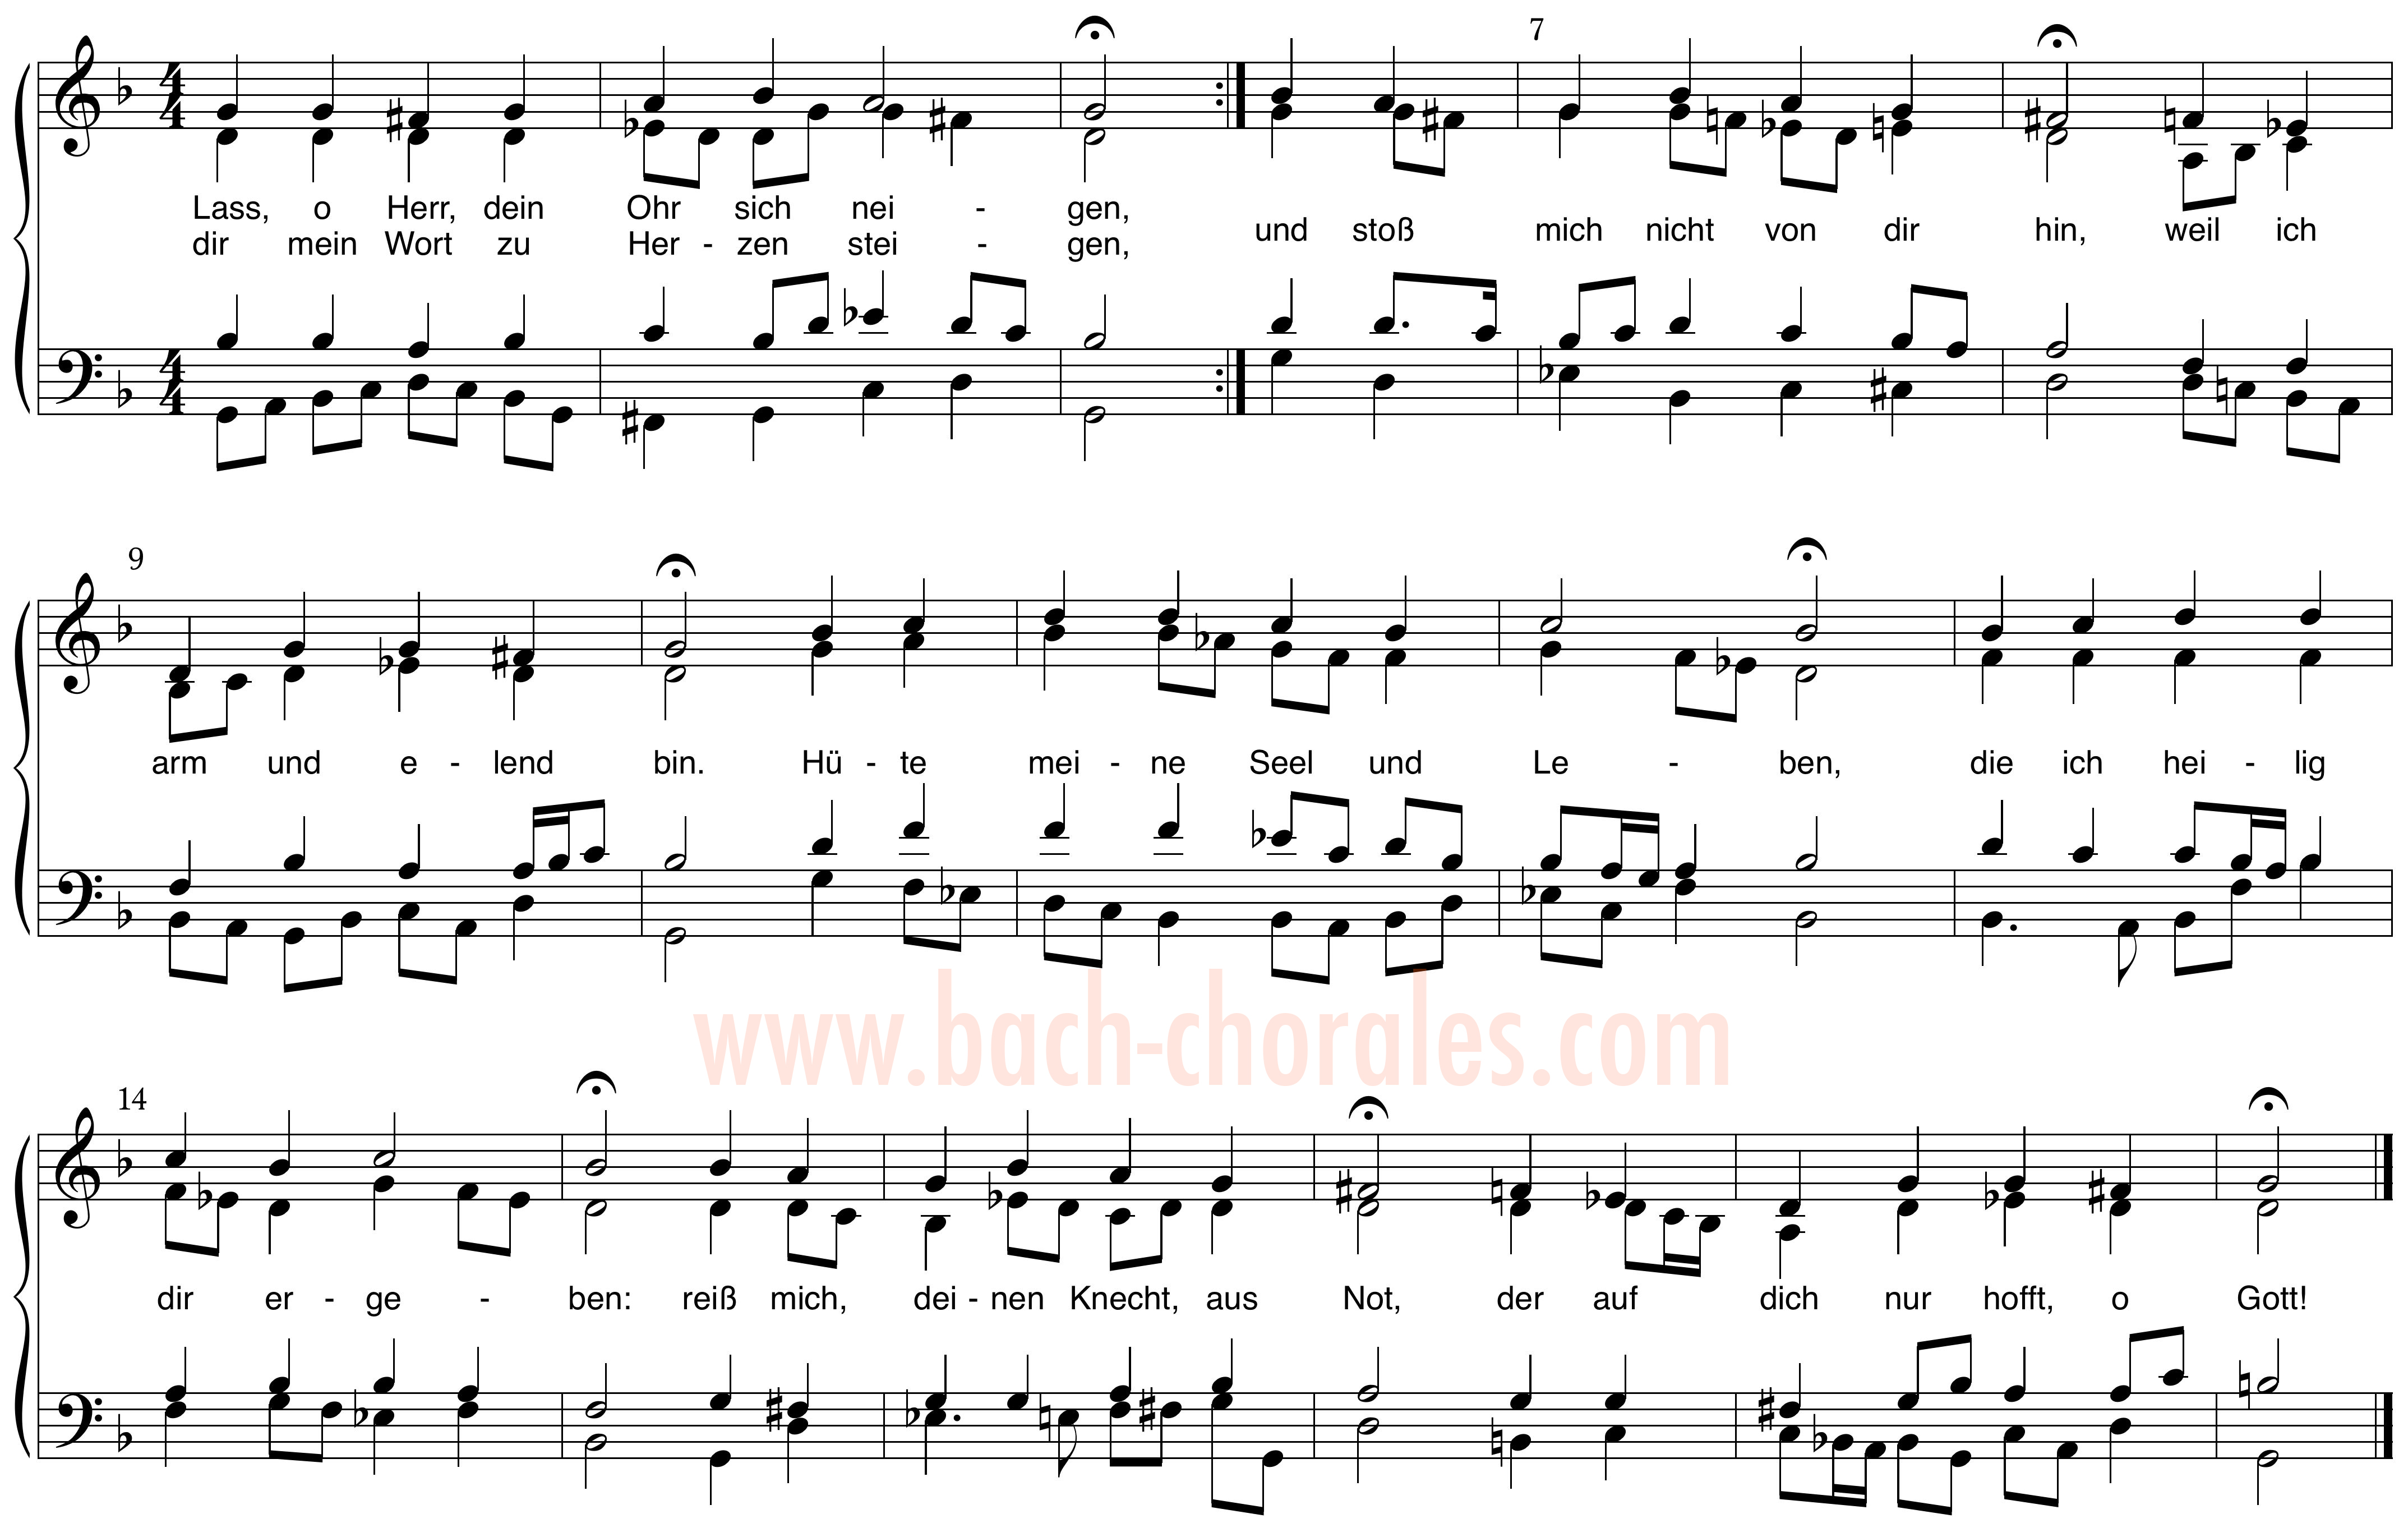 notenbeeld BWV 372 op https://www.bach-chorales.com/